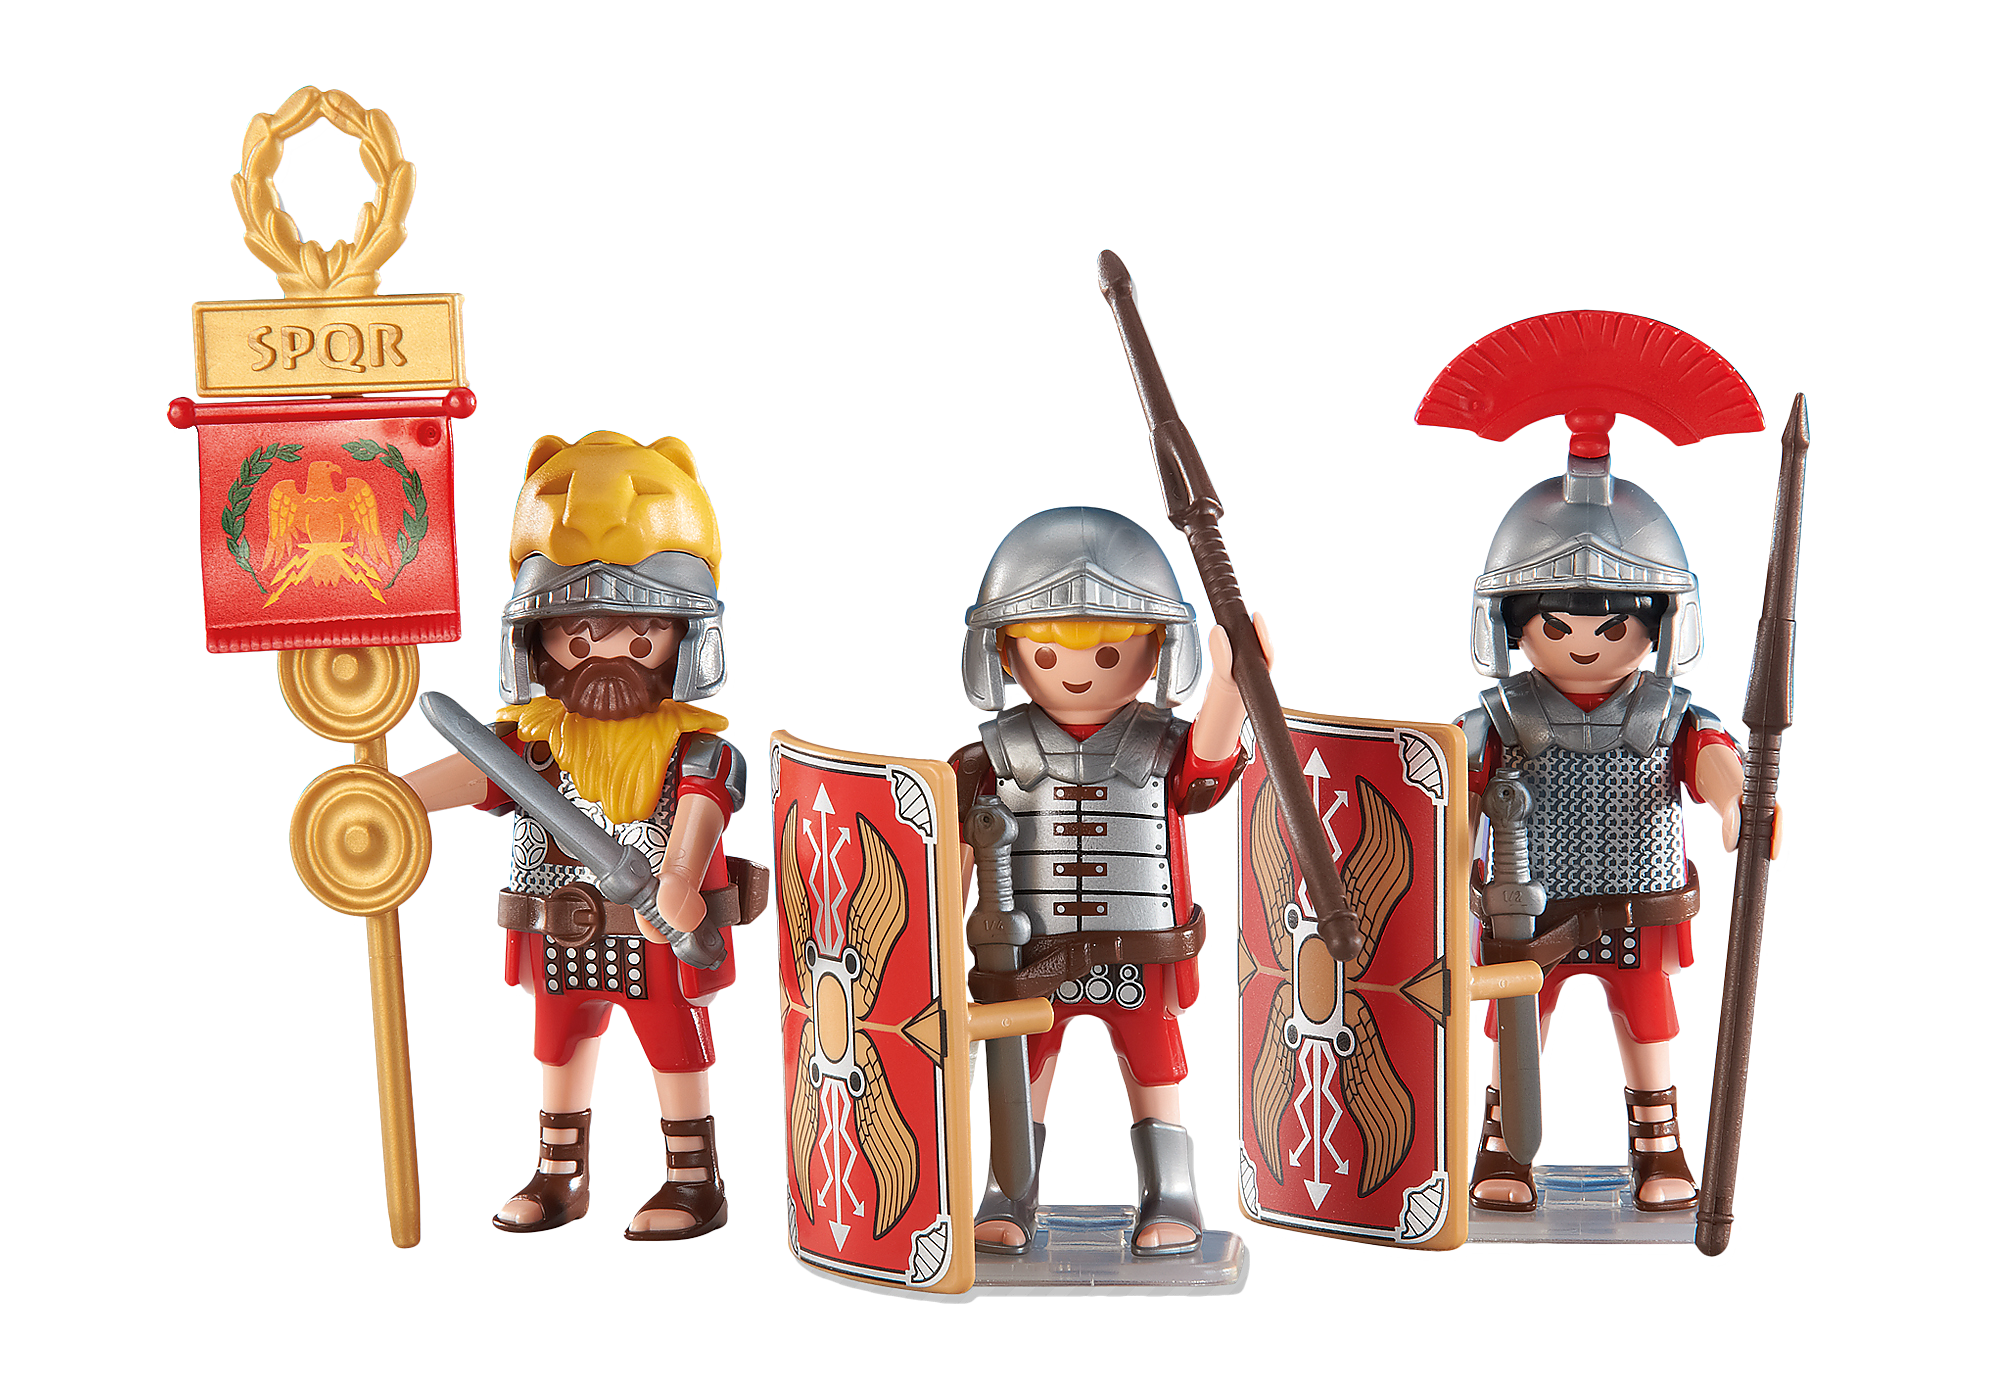 3 soldats romains - 6490